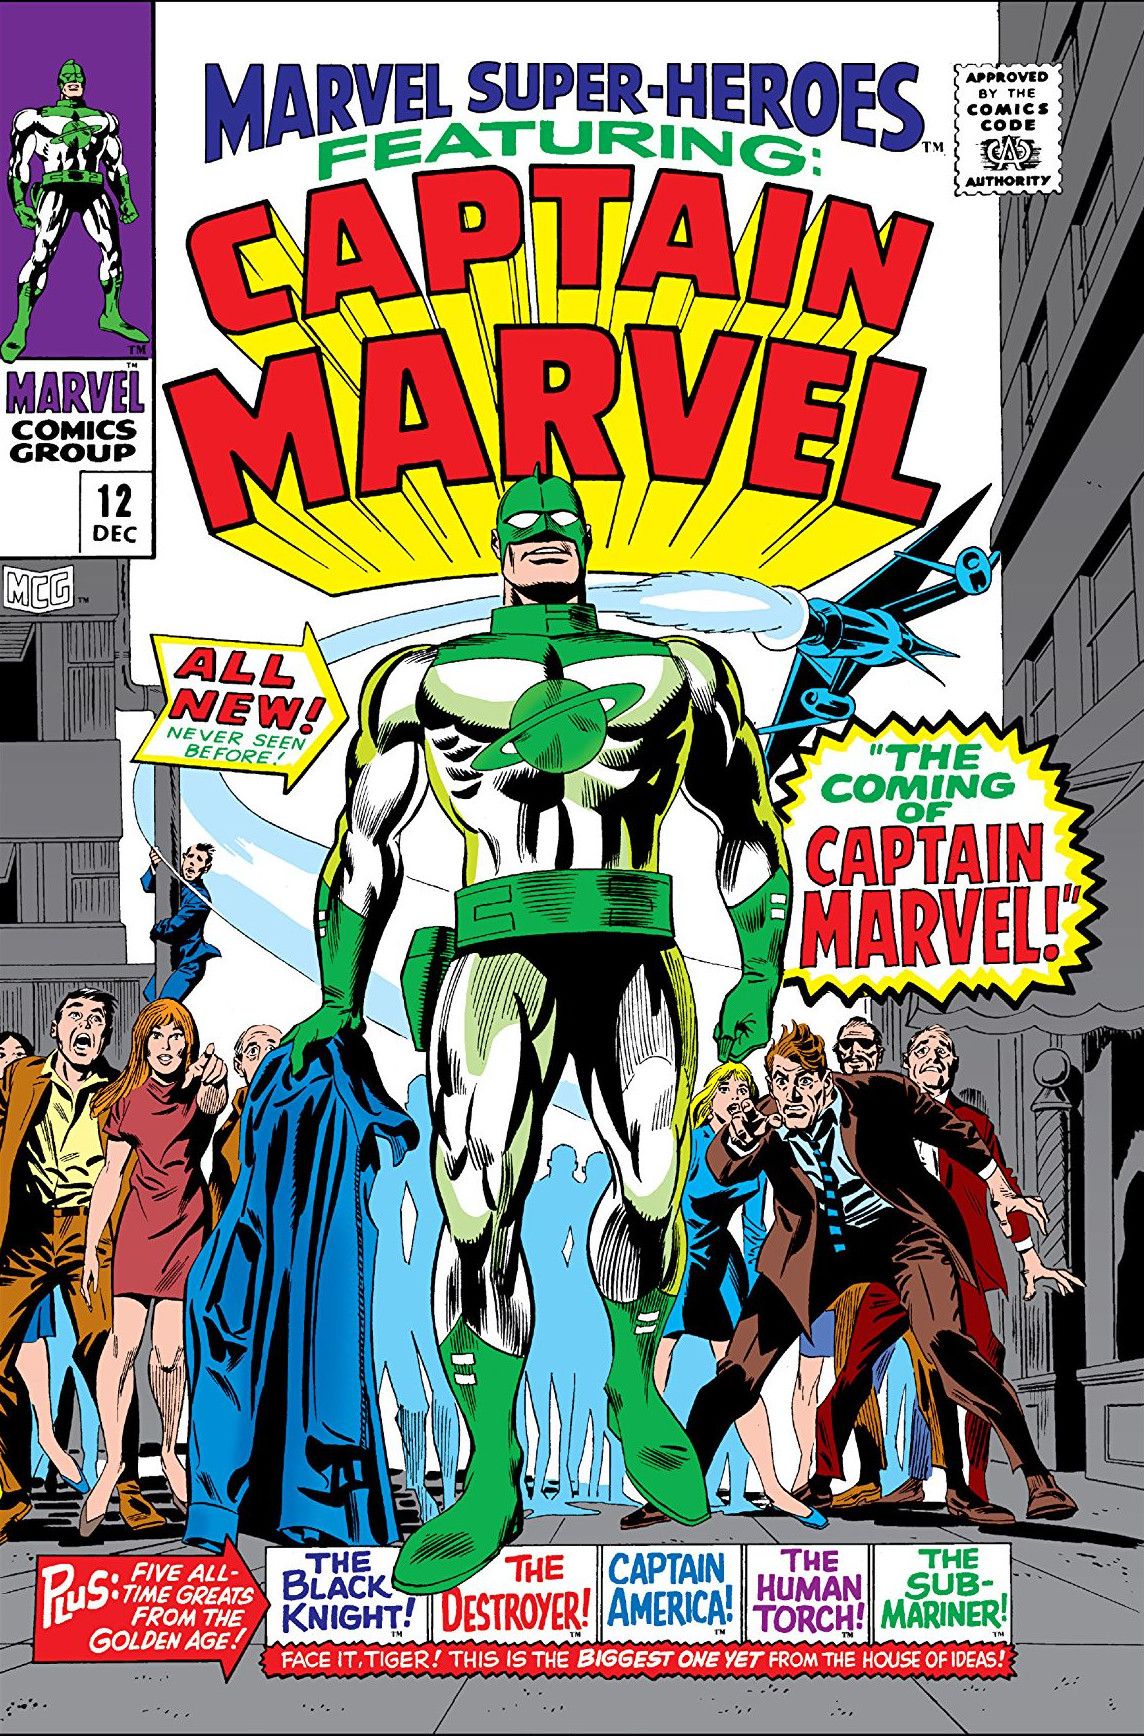 Marvel przedstawił własnego Kapitana Marvela